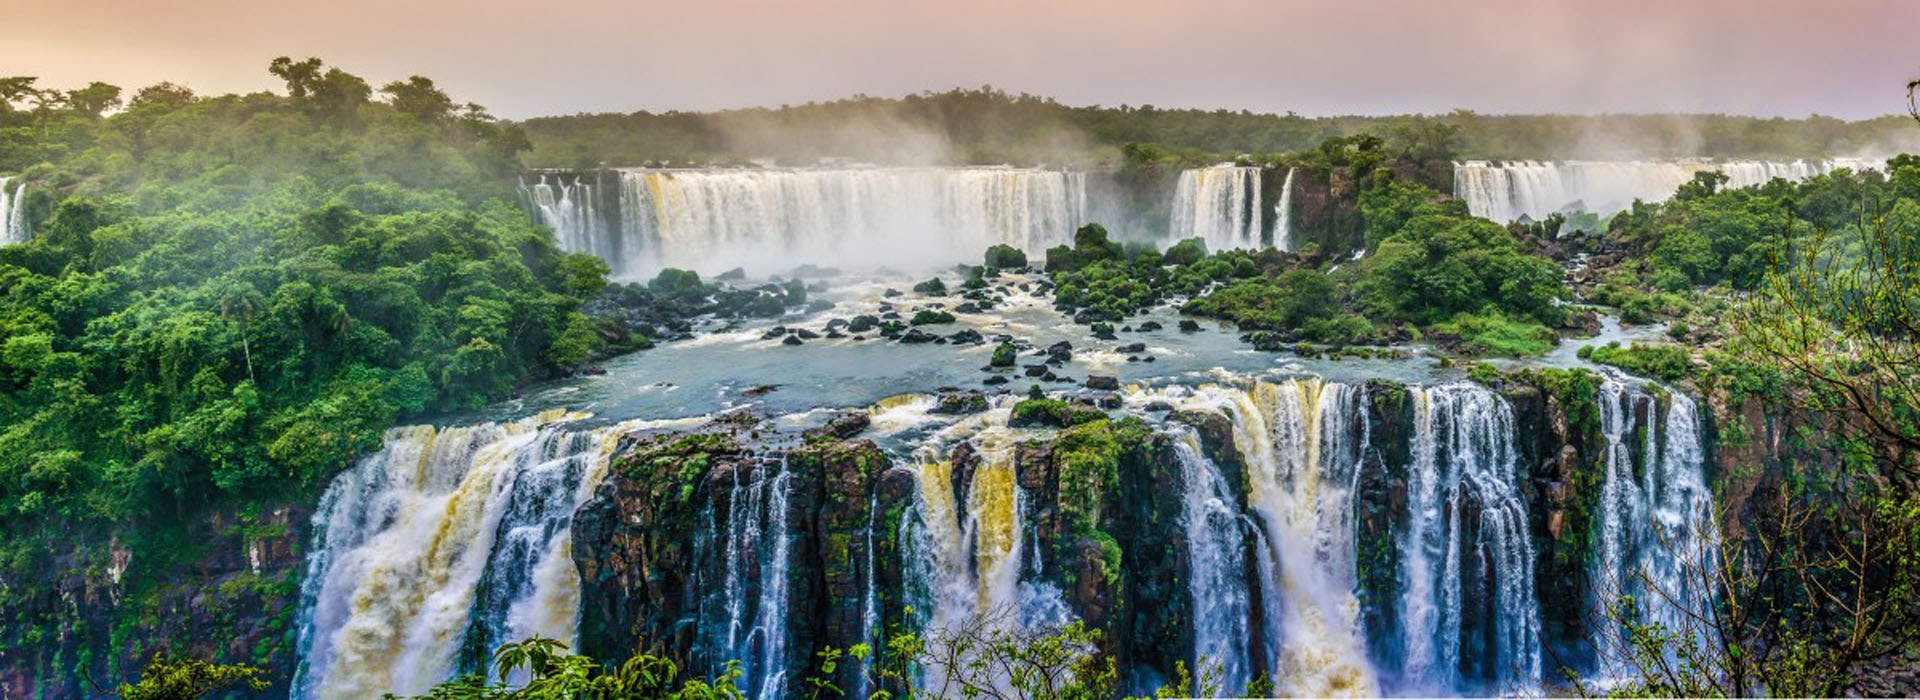 Visiter Les chutes d'Iguazu - Brésil